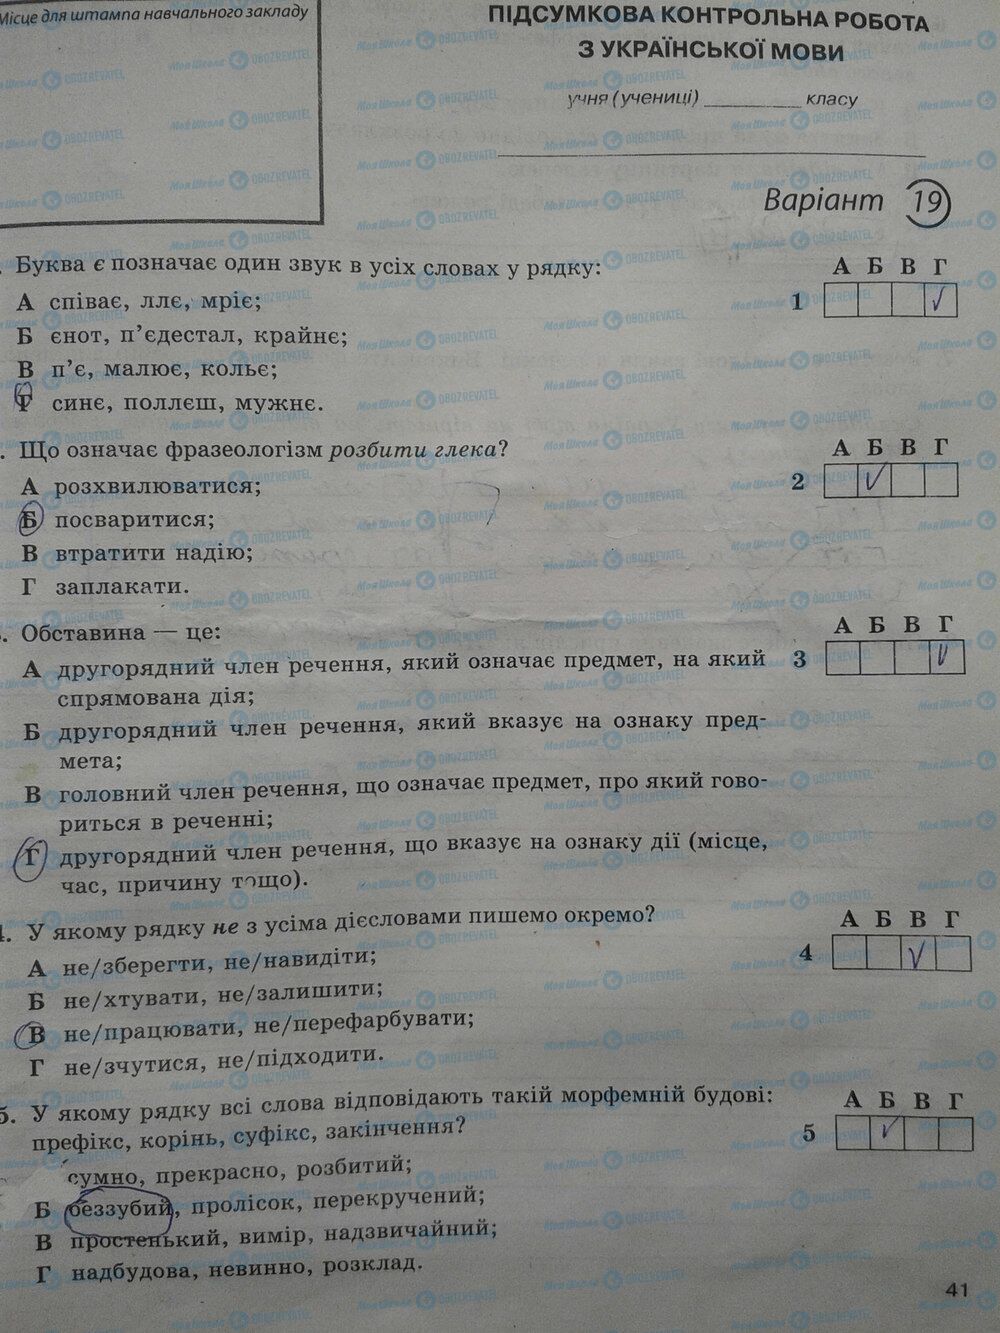 ГДЗ Укр мова 5 класс страница стр. 41